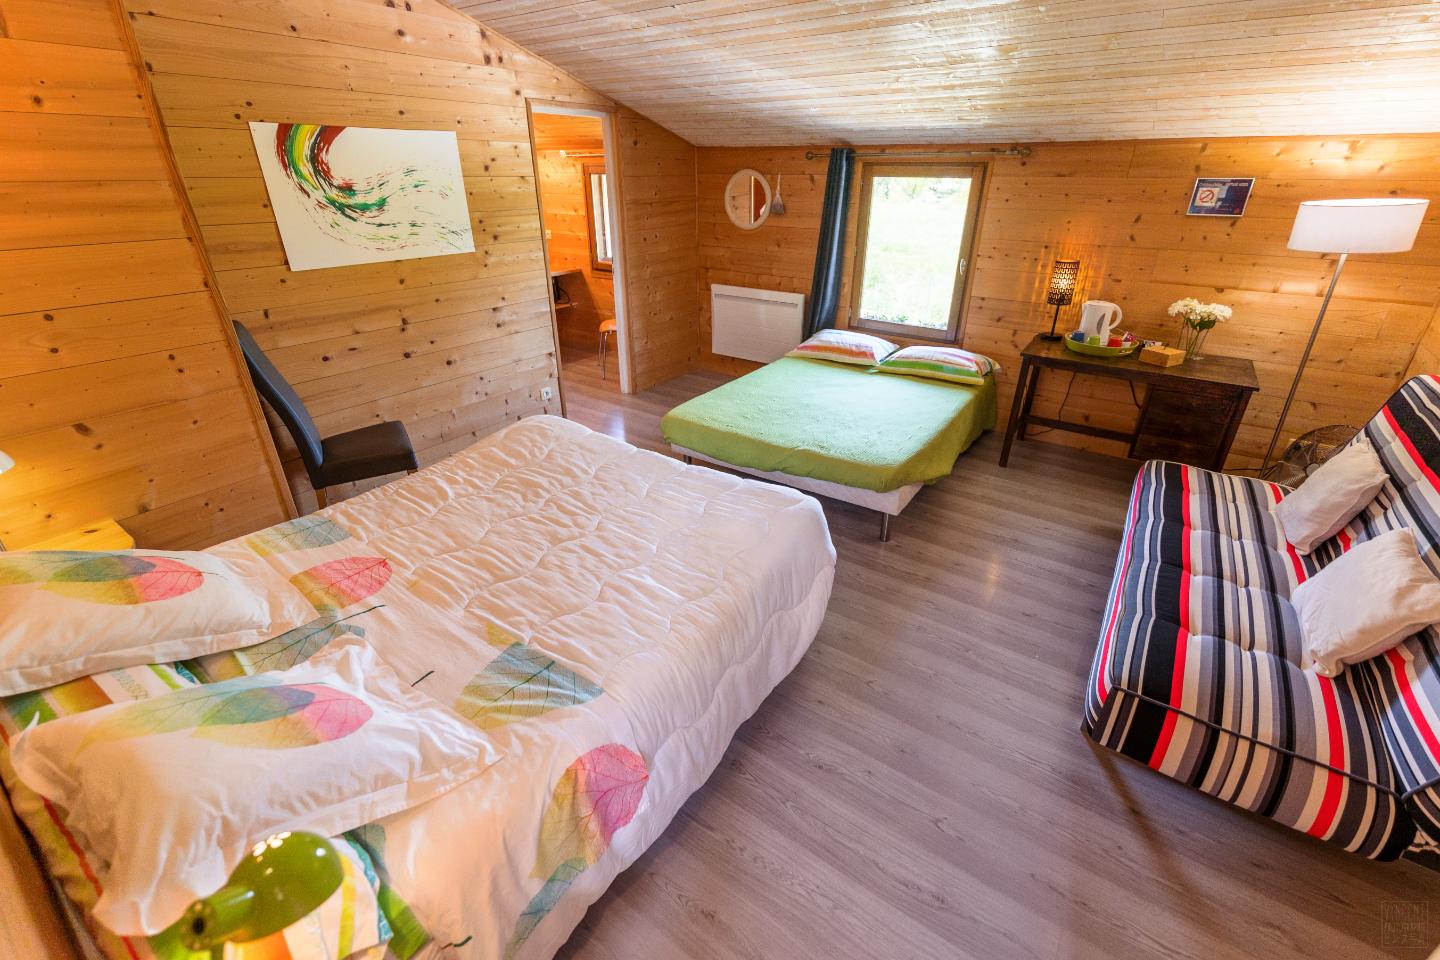 Hôte GreenGo: Neptune Wood  Chambres d'Hôtes dans une maison contemporaine en bois - Image 10